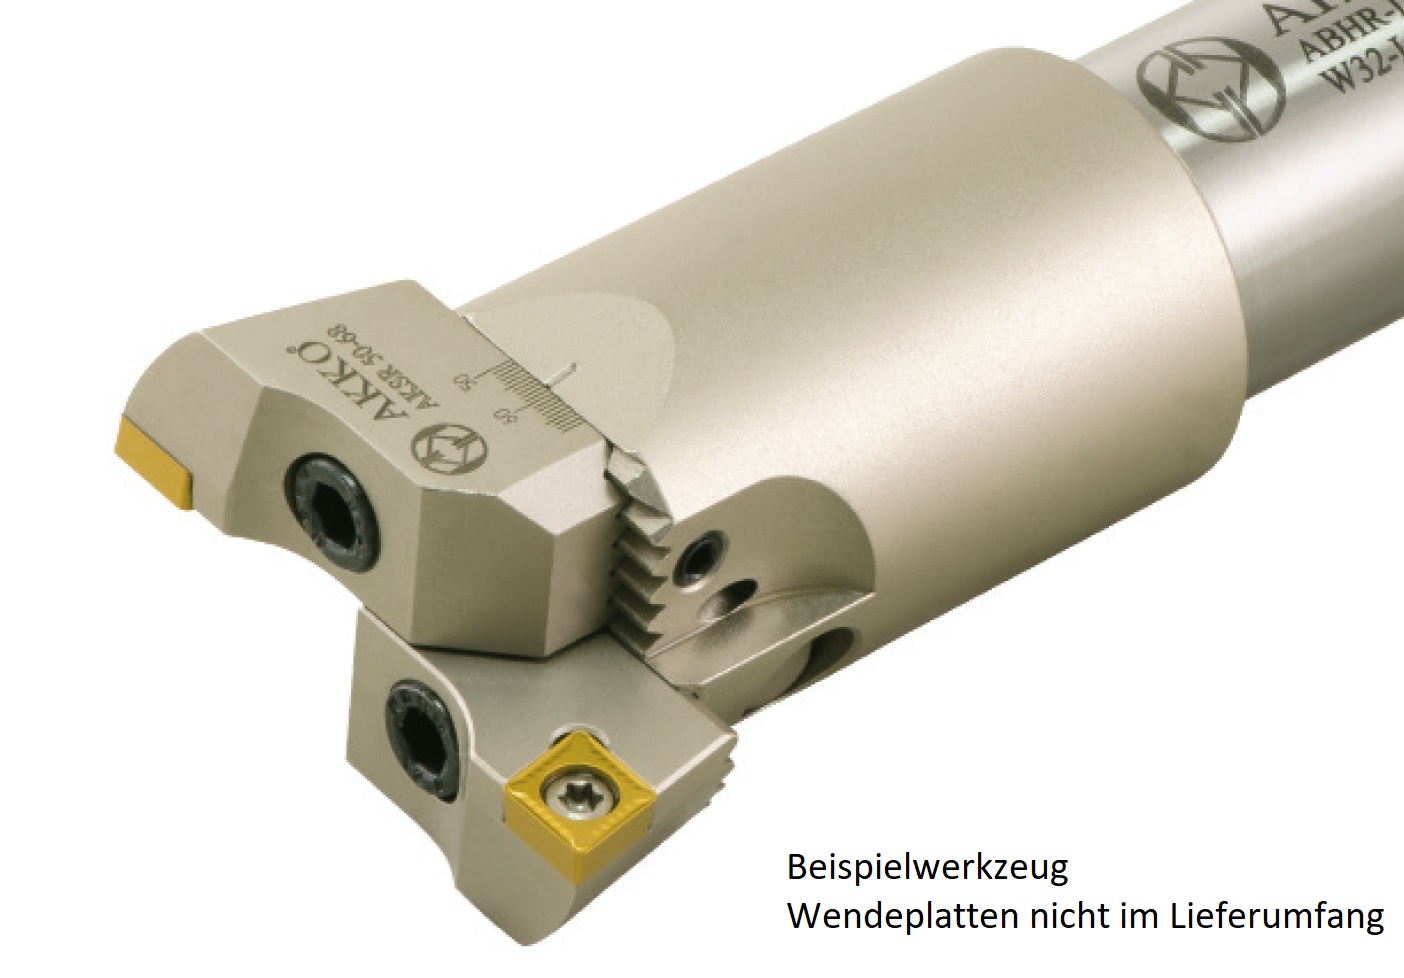 AKKO - Einstellbarer Schrupp-Spindelkopf ø 18-22 mm, Bohrtiefe 102 mm
kompatibel mit ISO CC.. 0602.., mit Innenkühlung